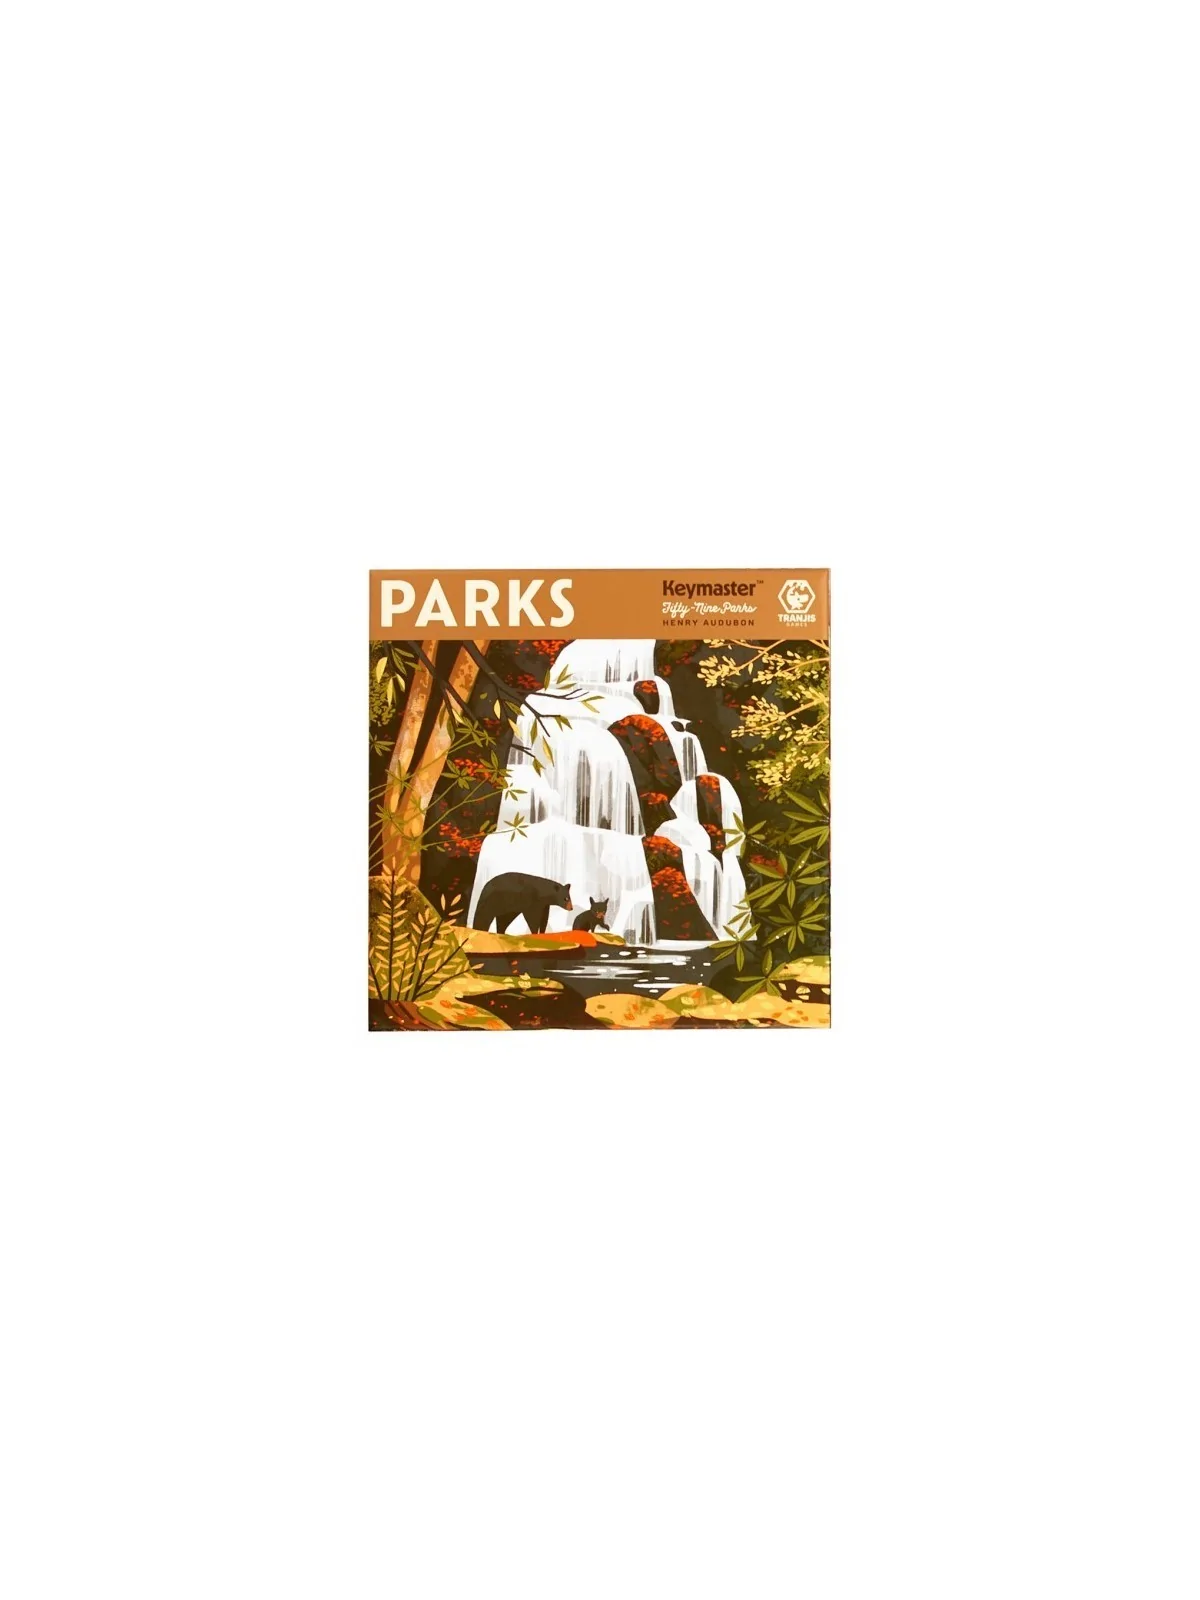 Comprar Parks barato al mejor precio 44,96 € de Tranjis Games